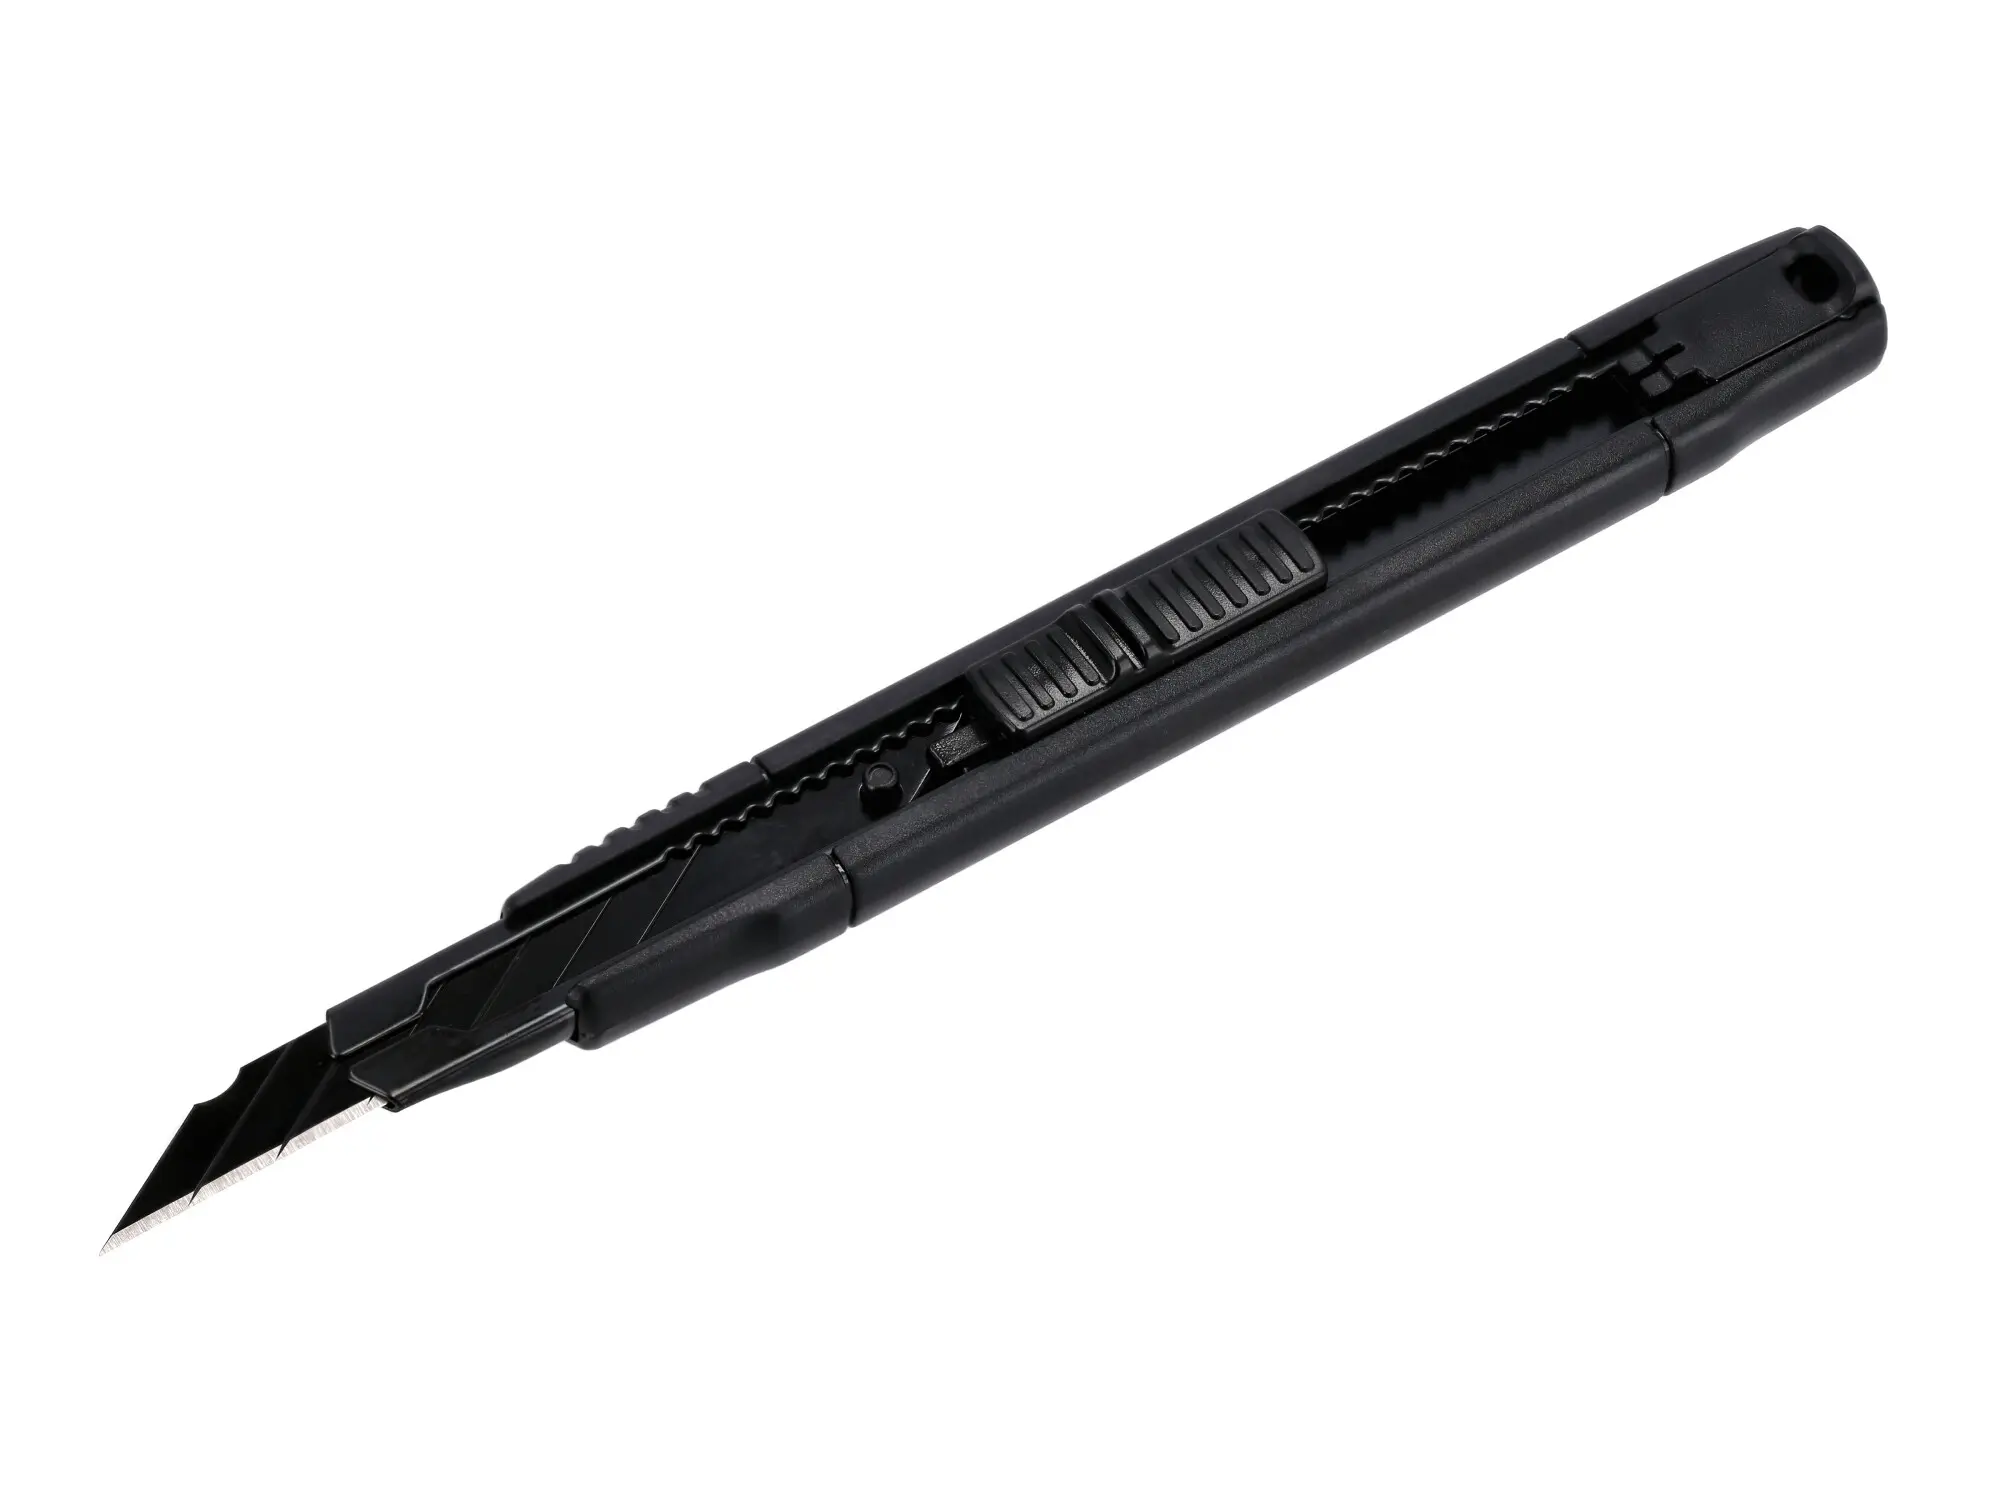 Cuttermesser mit 9mm Trapezklinge , Schwarz, Item no: 10076842 - Image 1